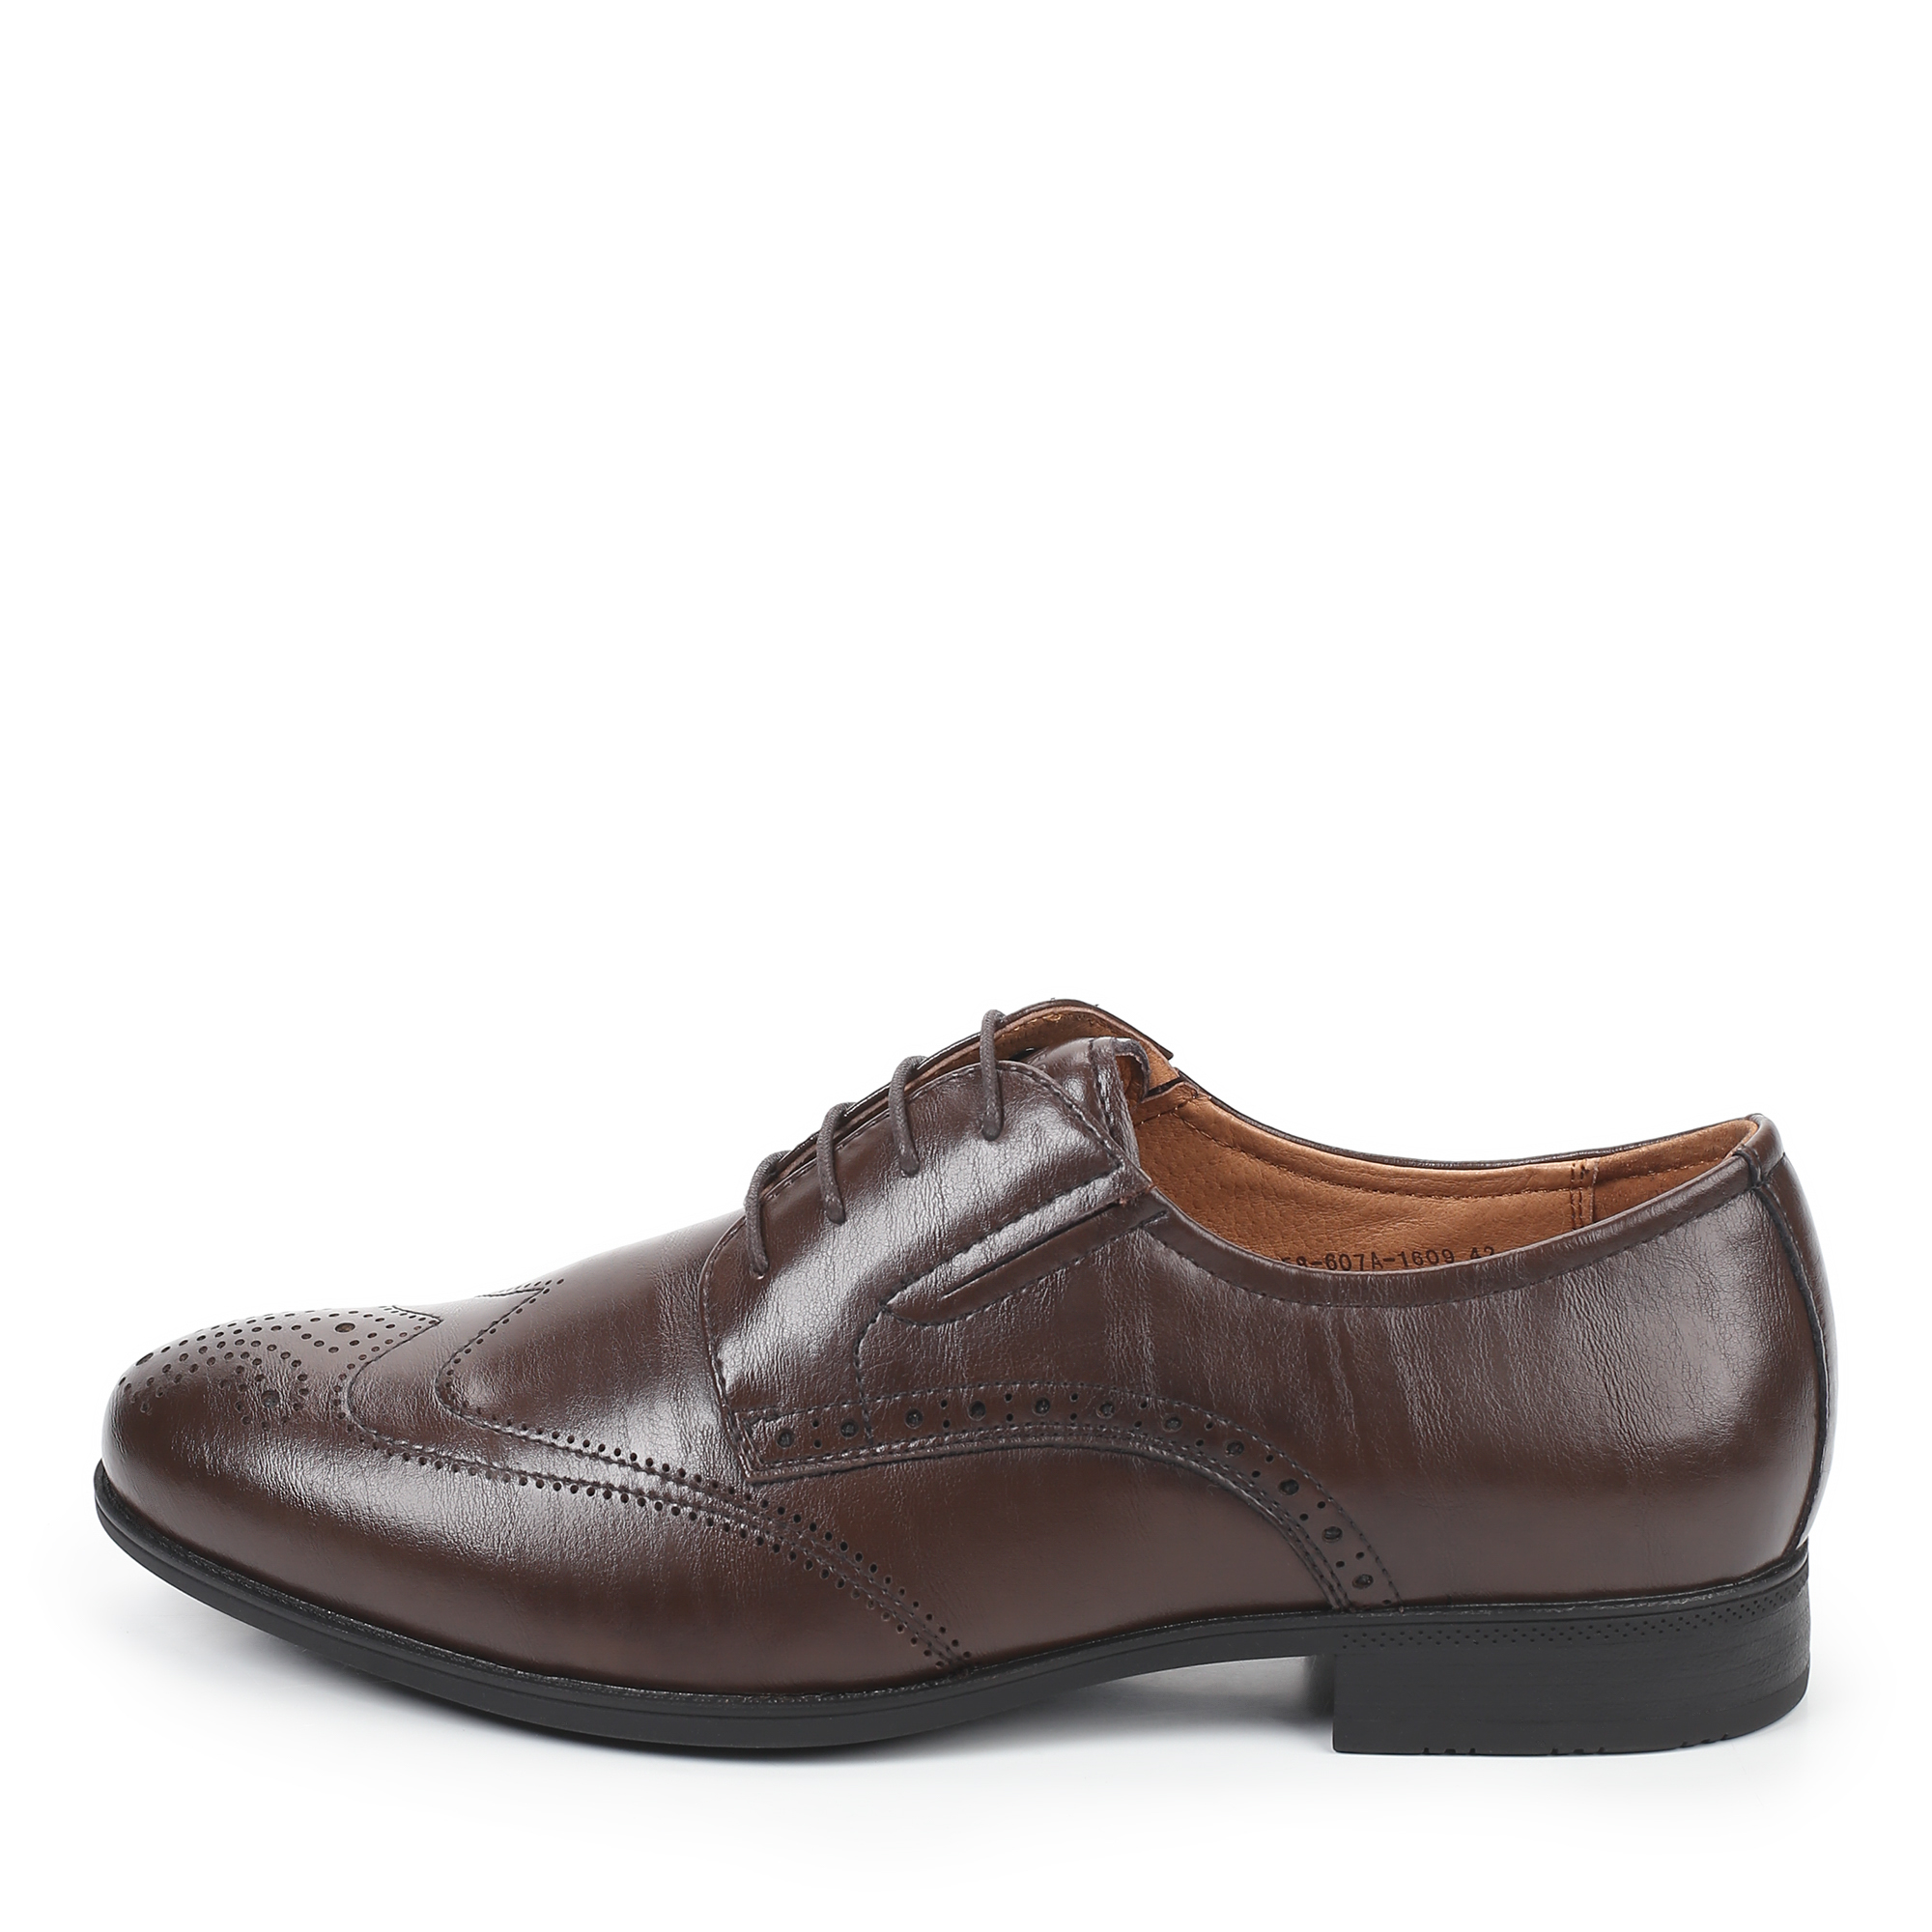 Туфли/полуботинки Thomas Munz 058-607A-1609, цвет темно-коричневый, размер 40